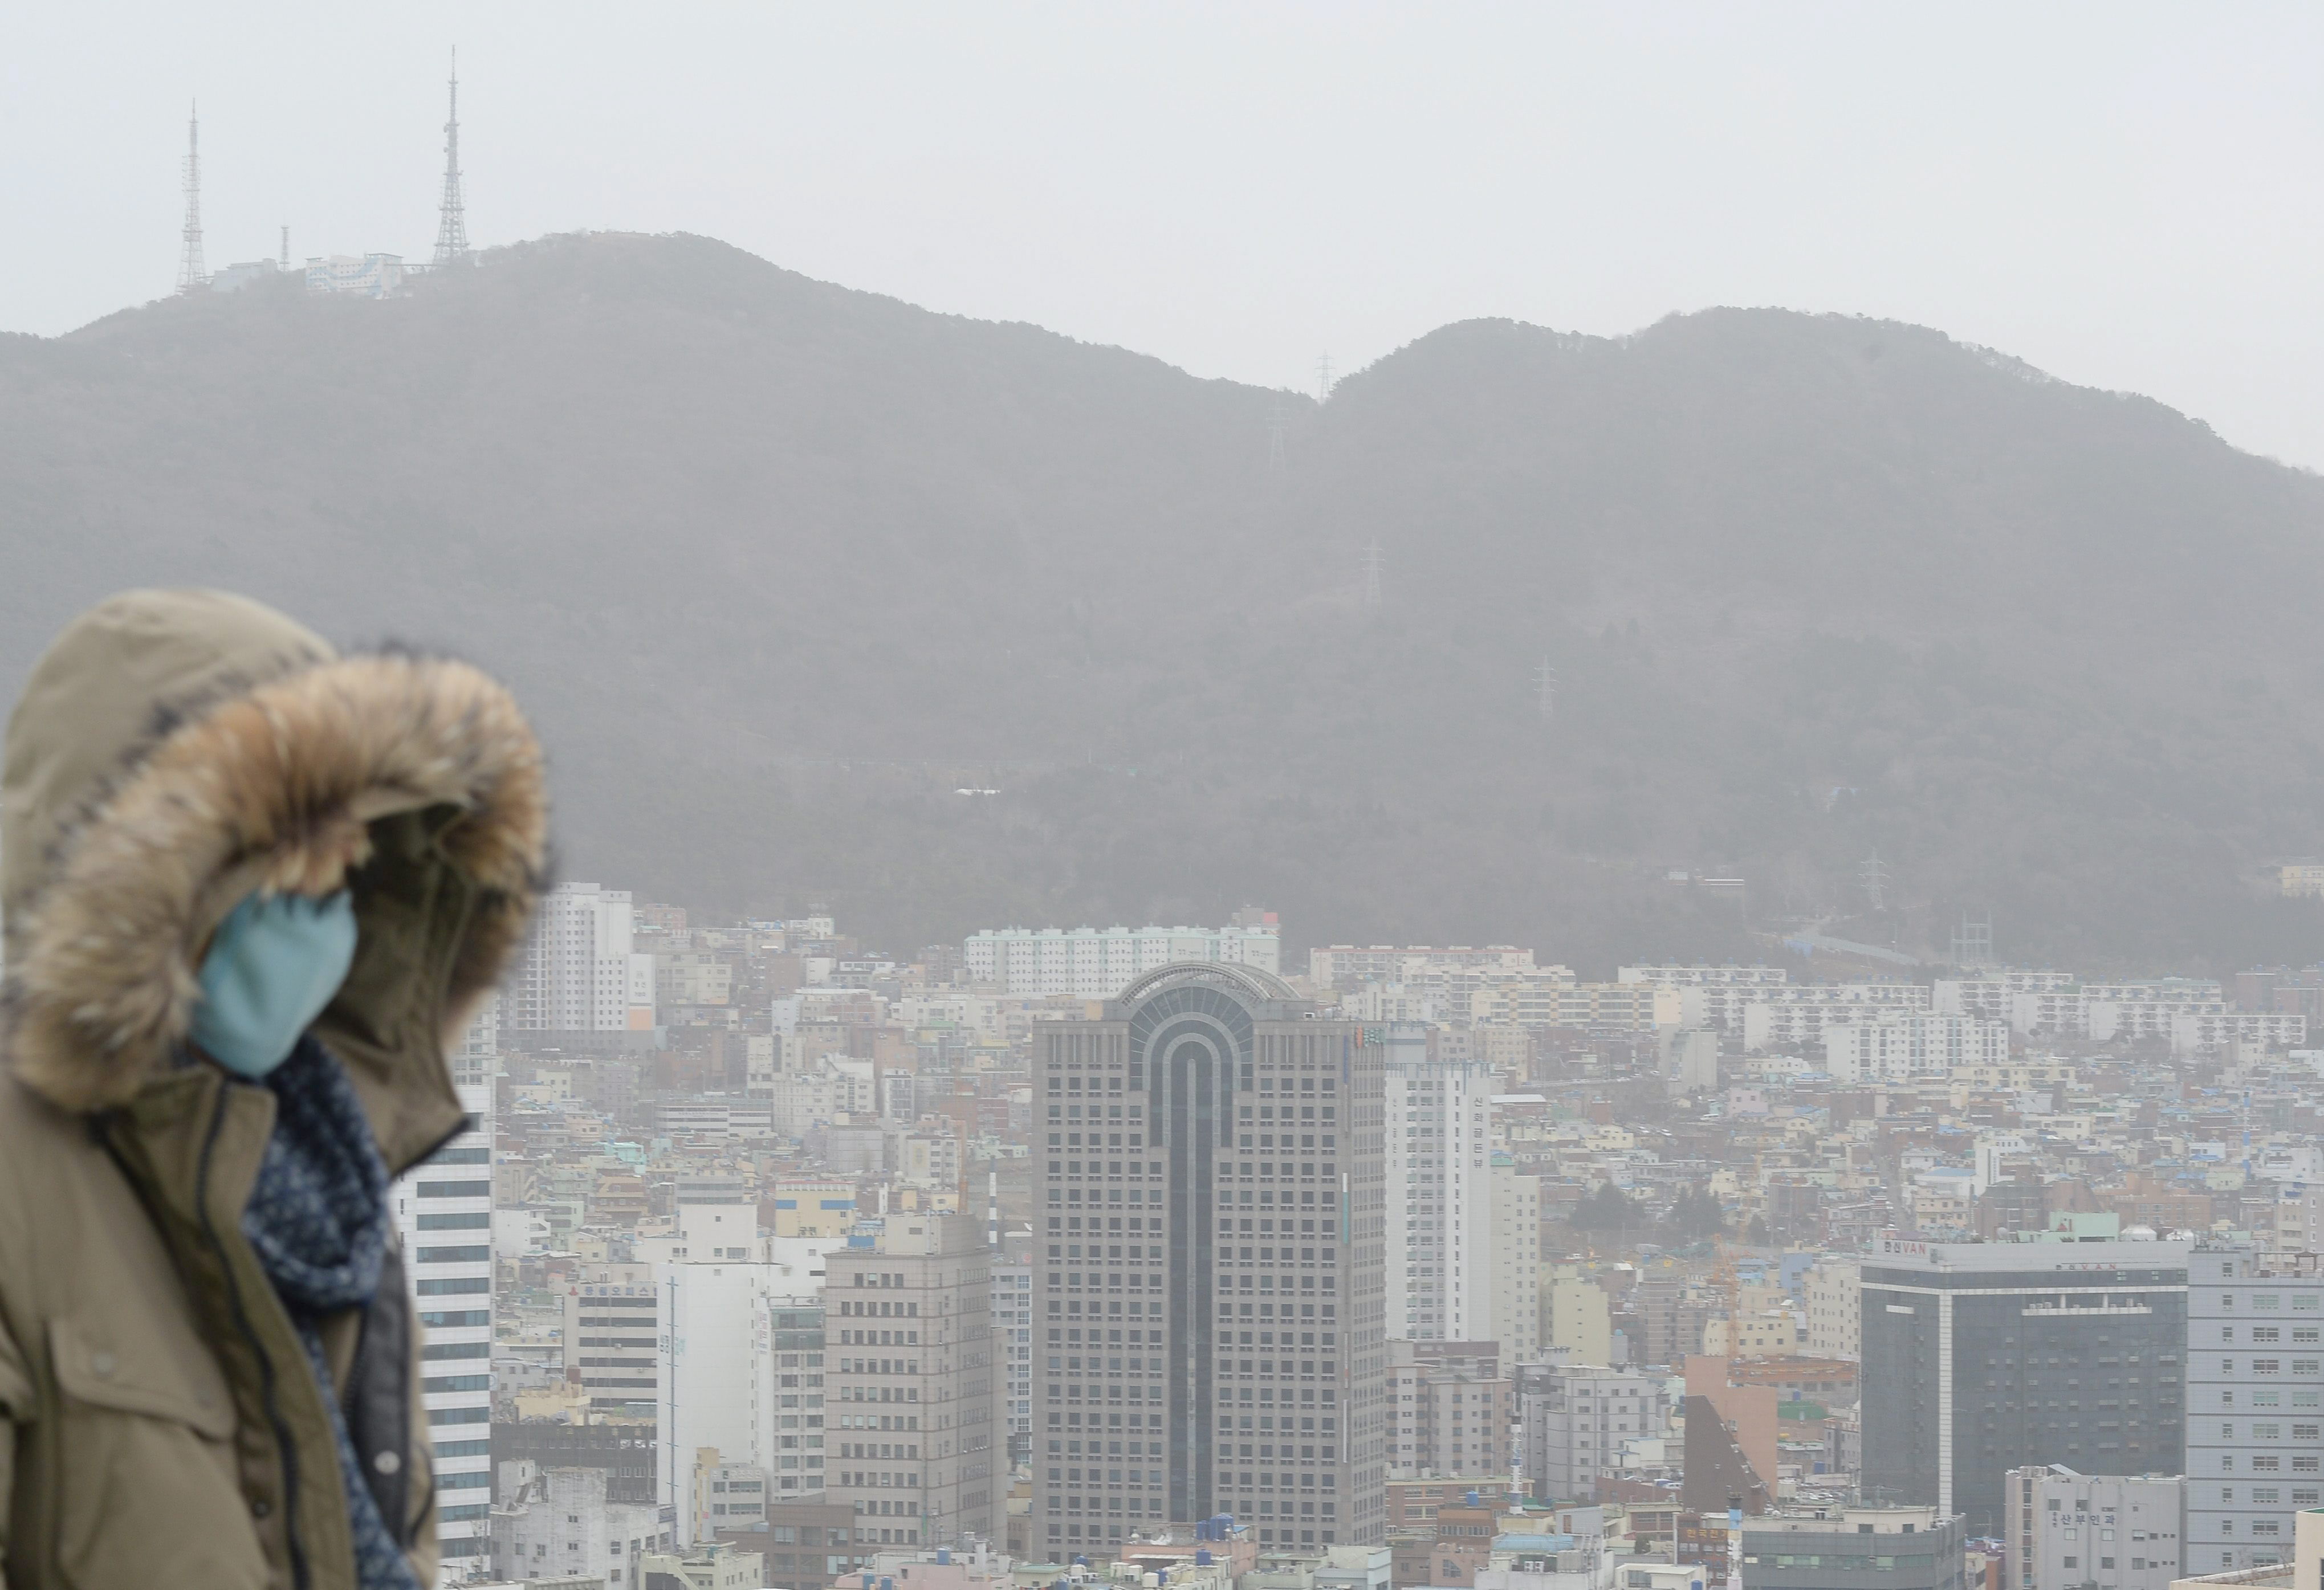 Corea del Sur ocupa el noveno lugar de los países que generan más gases de efecto invernadero.